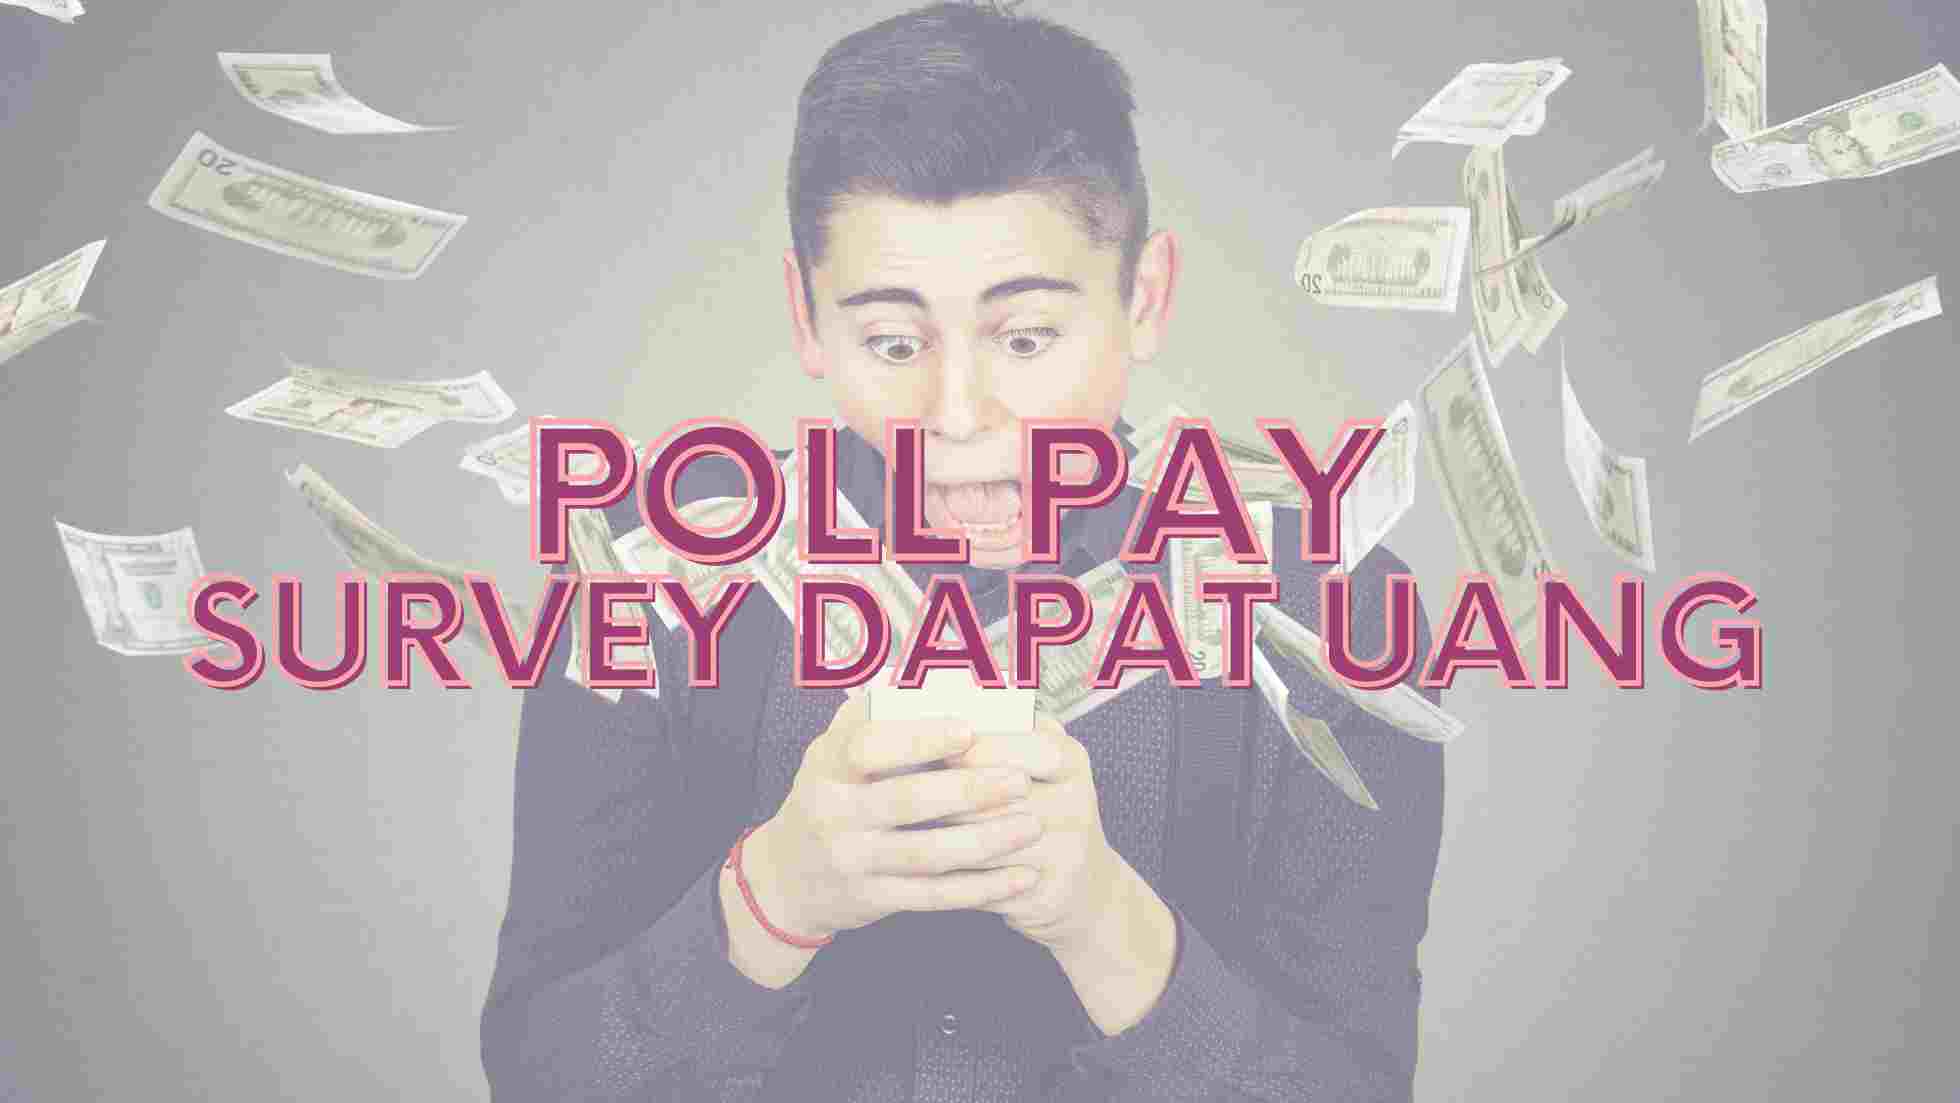 Poll Pay survey dapat uang